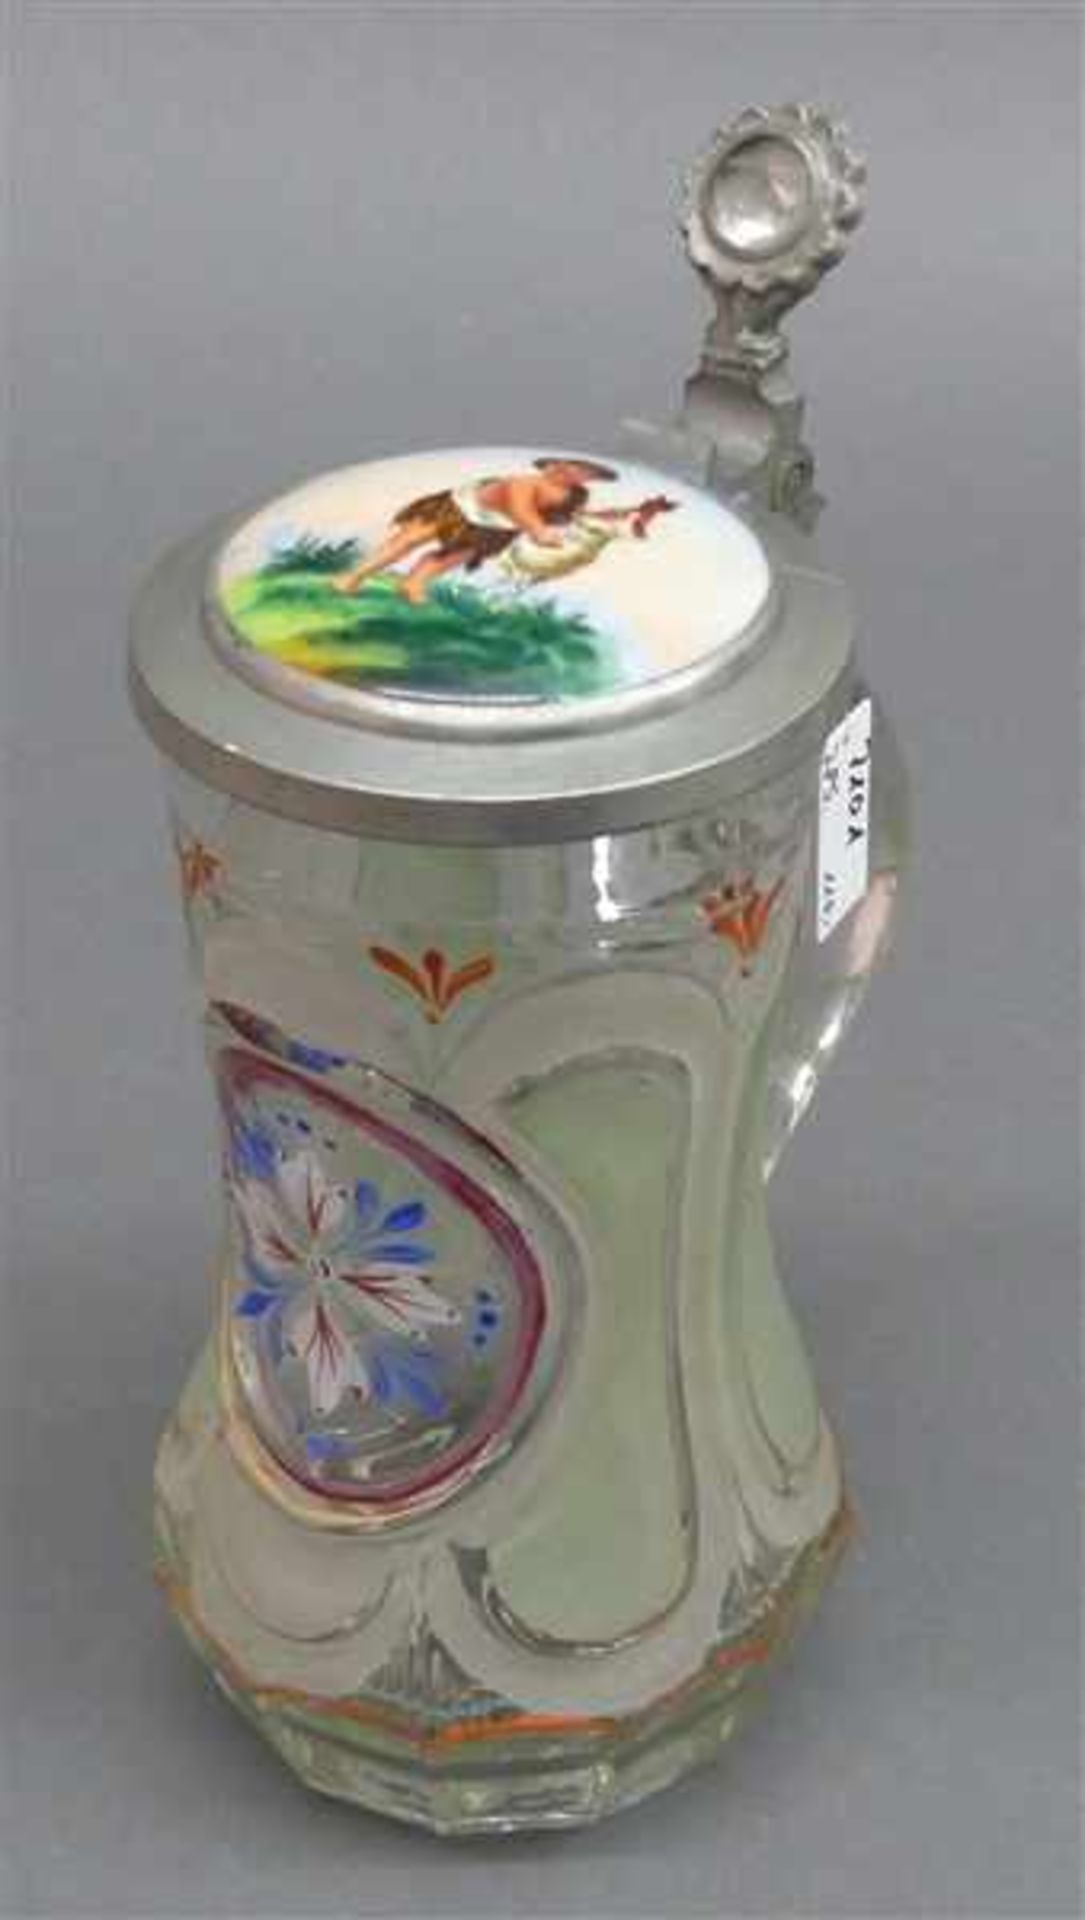 GlasbierkrugPressglas, teilweise geätzt, florales Medaillon, Zinndeckel mit bemaltem